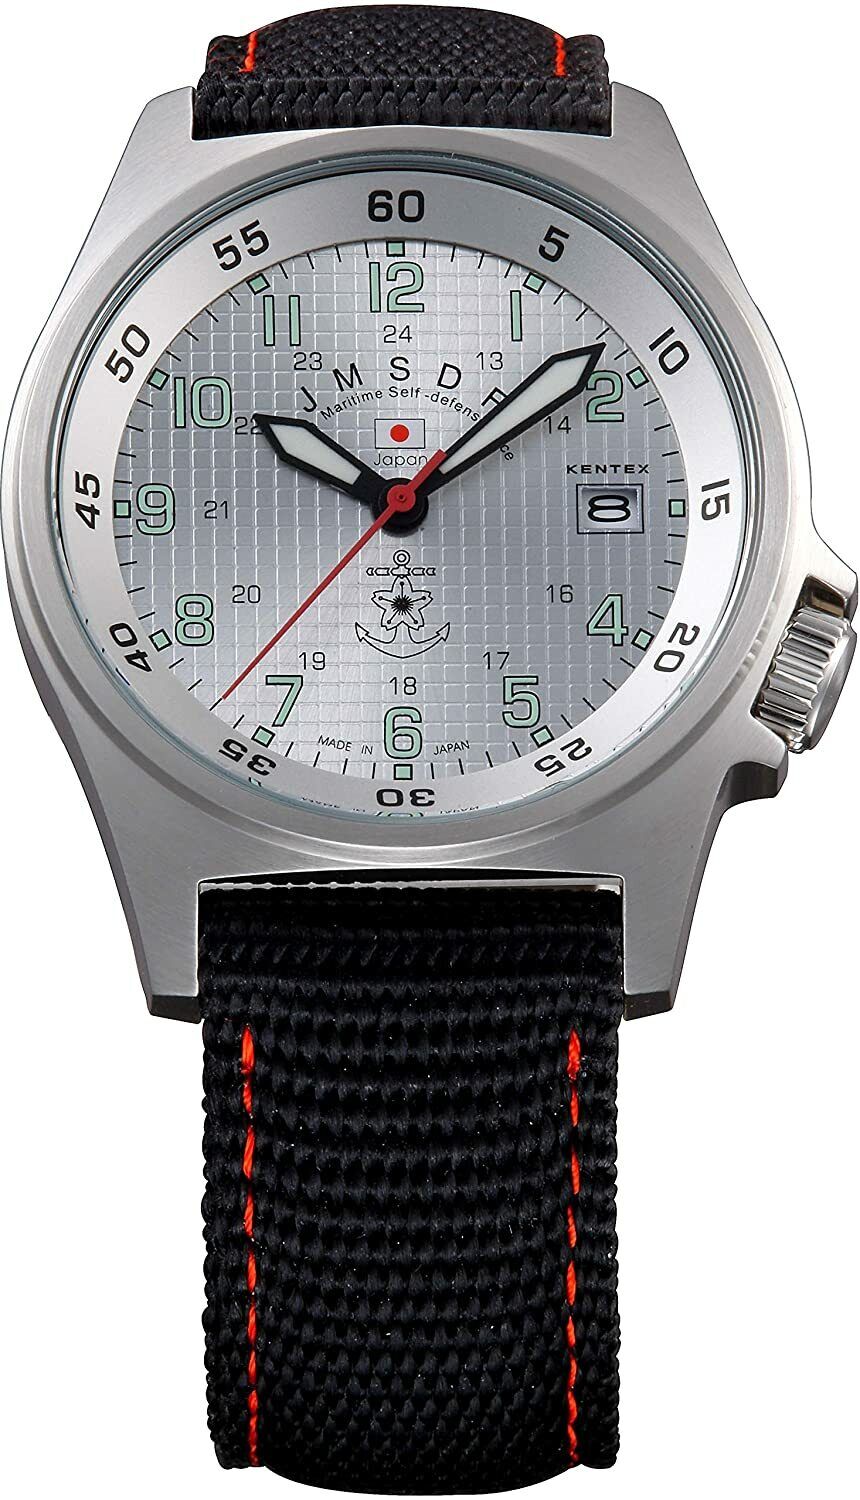 Kentex Men's Standard model JMSDF JSDF model S455M-03 watch